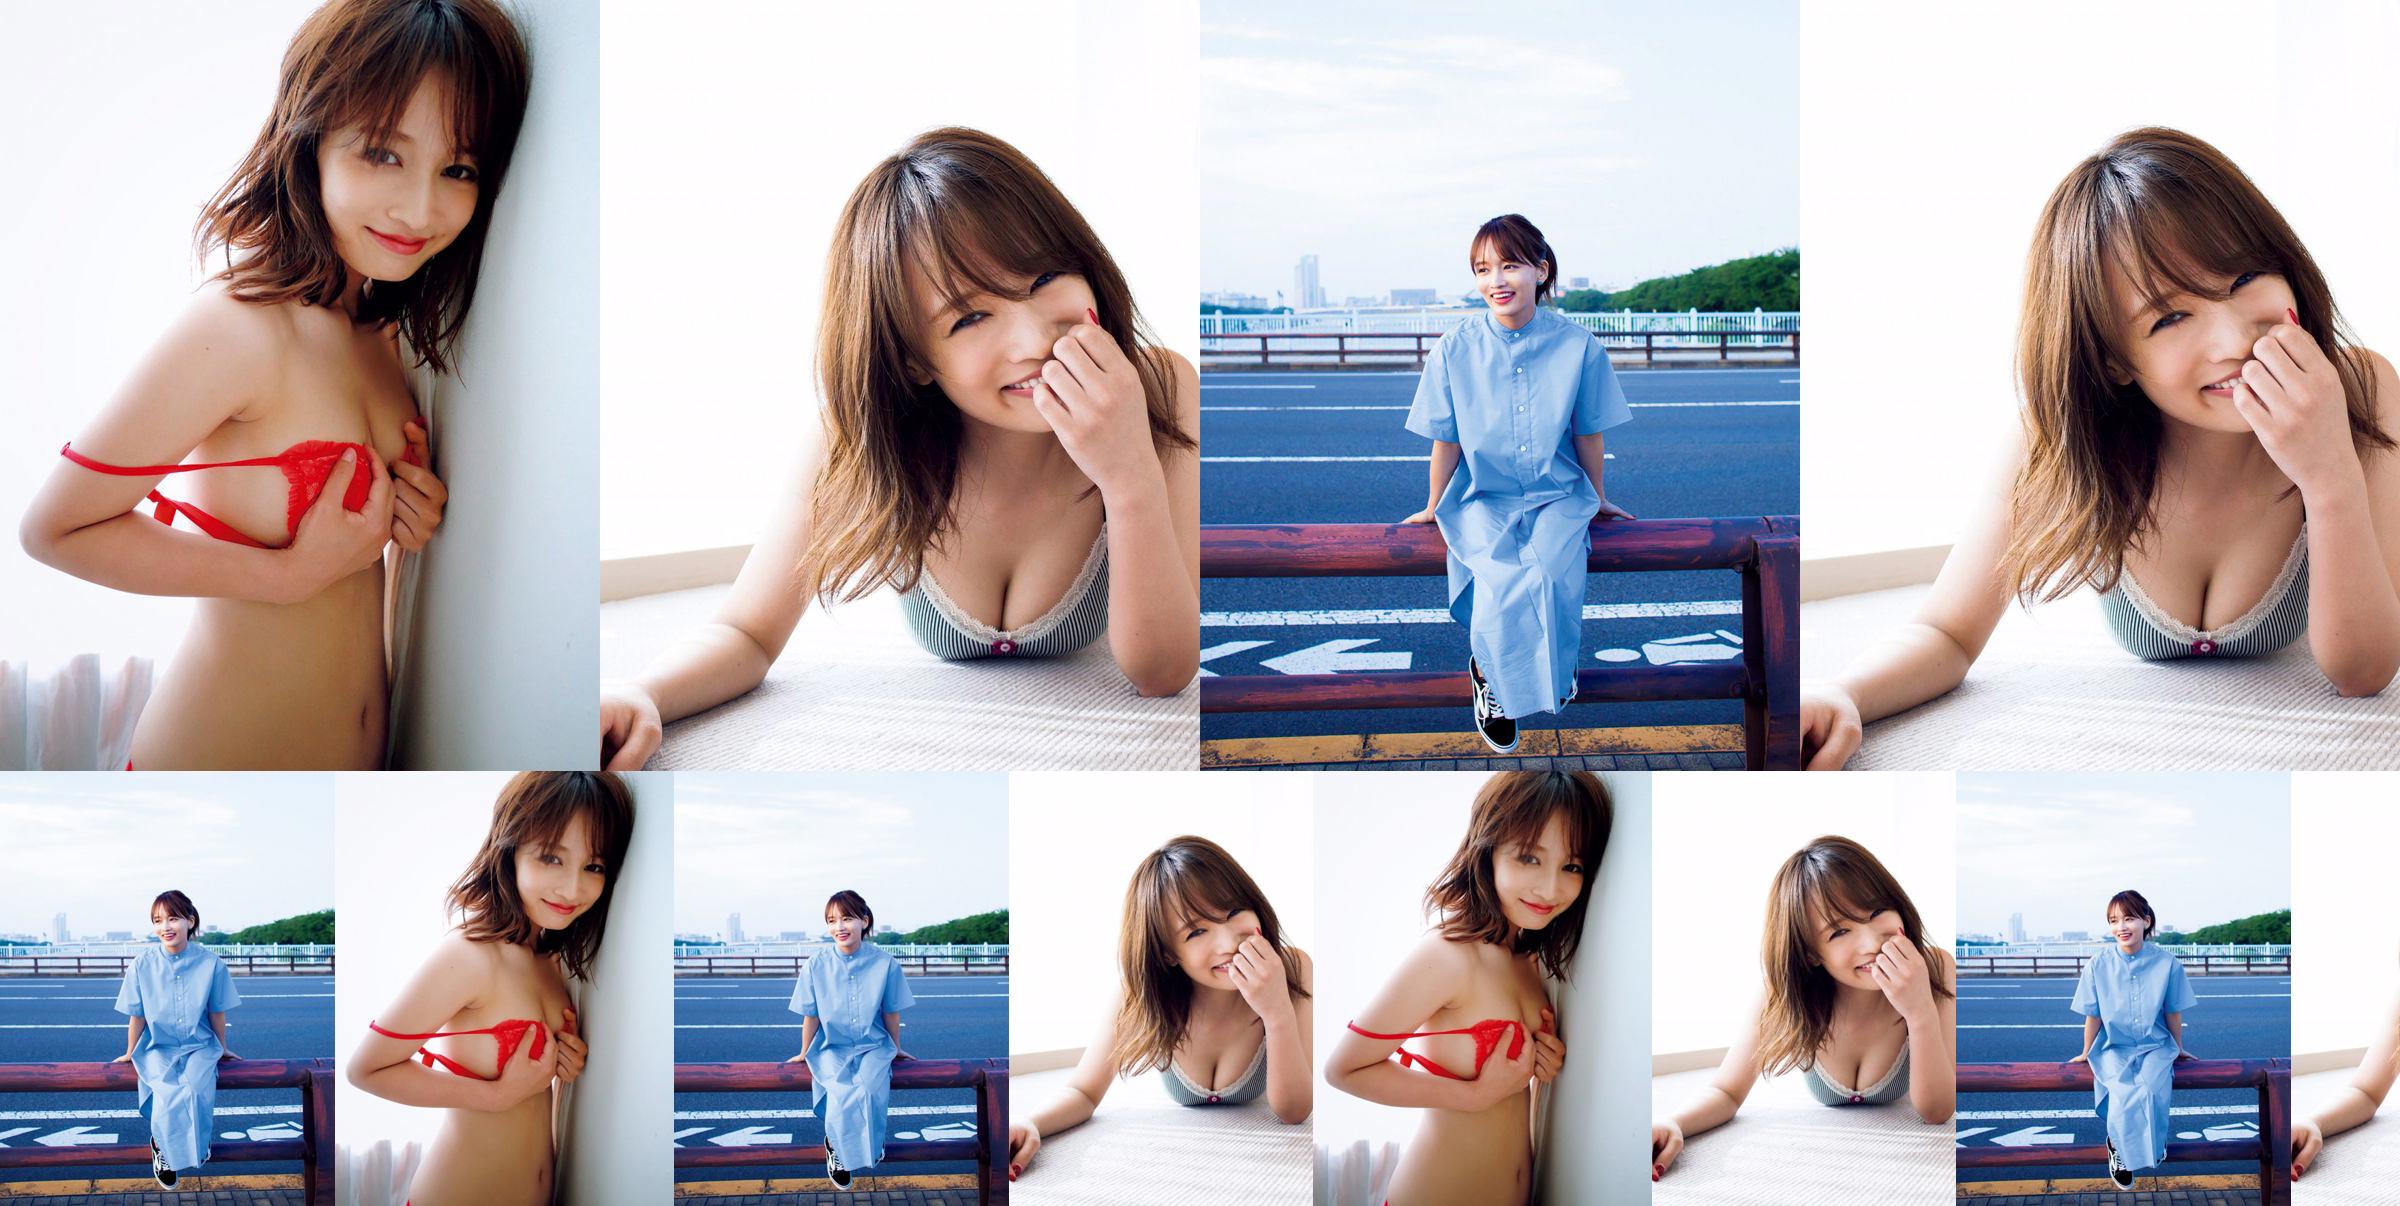 [ПЯТНИЦА] Mai Watanabe "Чубок F с тонким телом" фото No.4631dc Страница 1